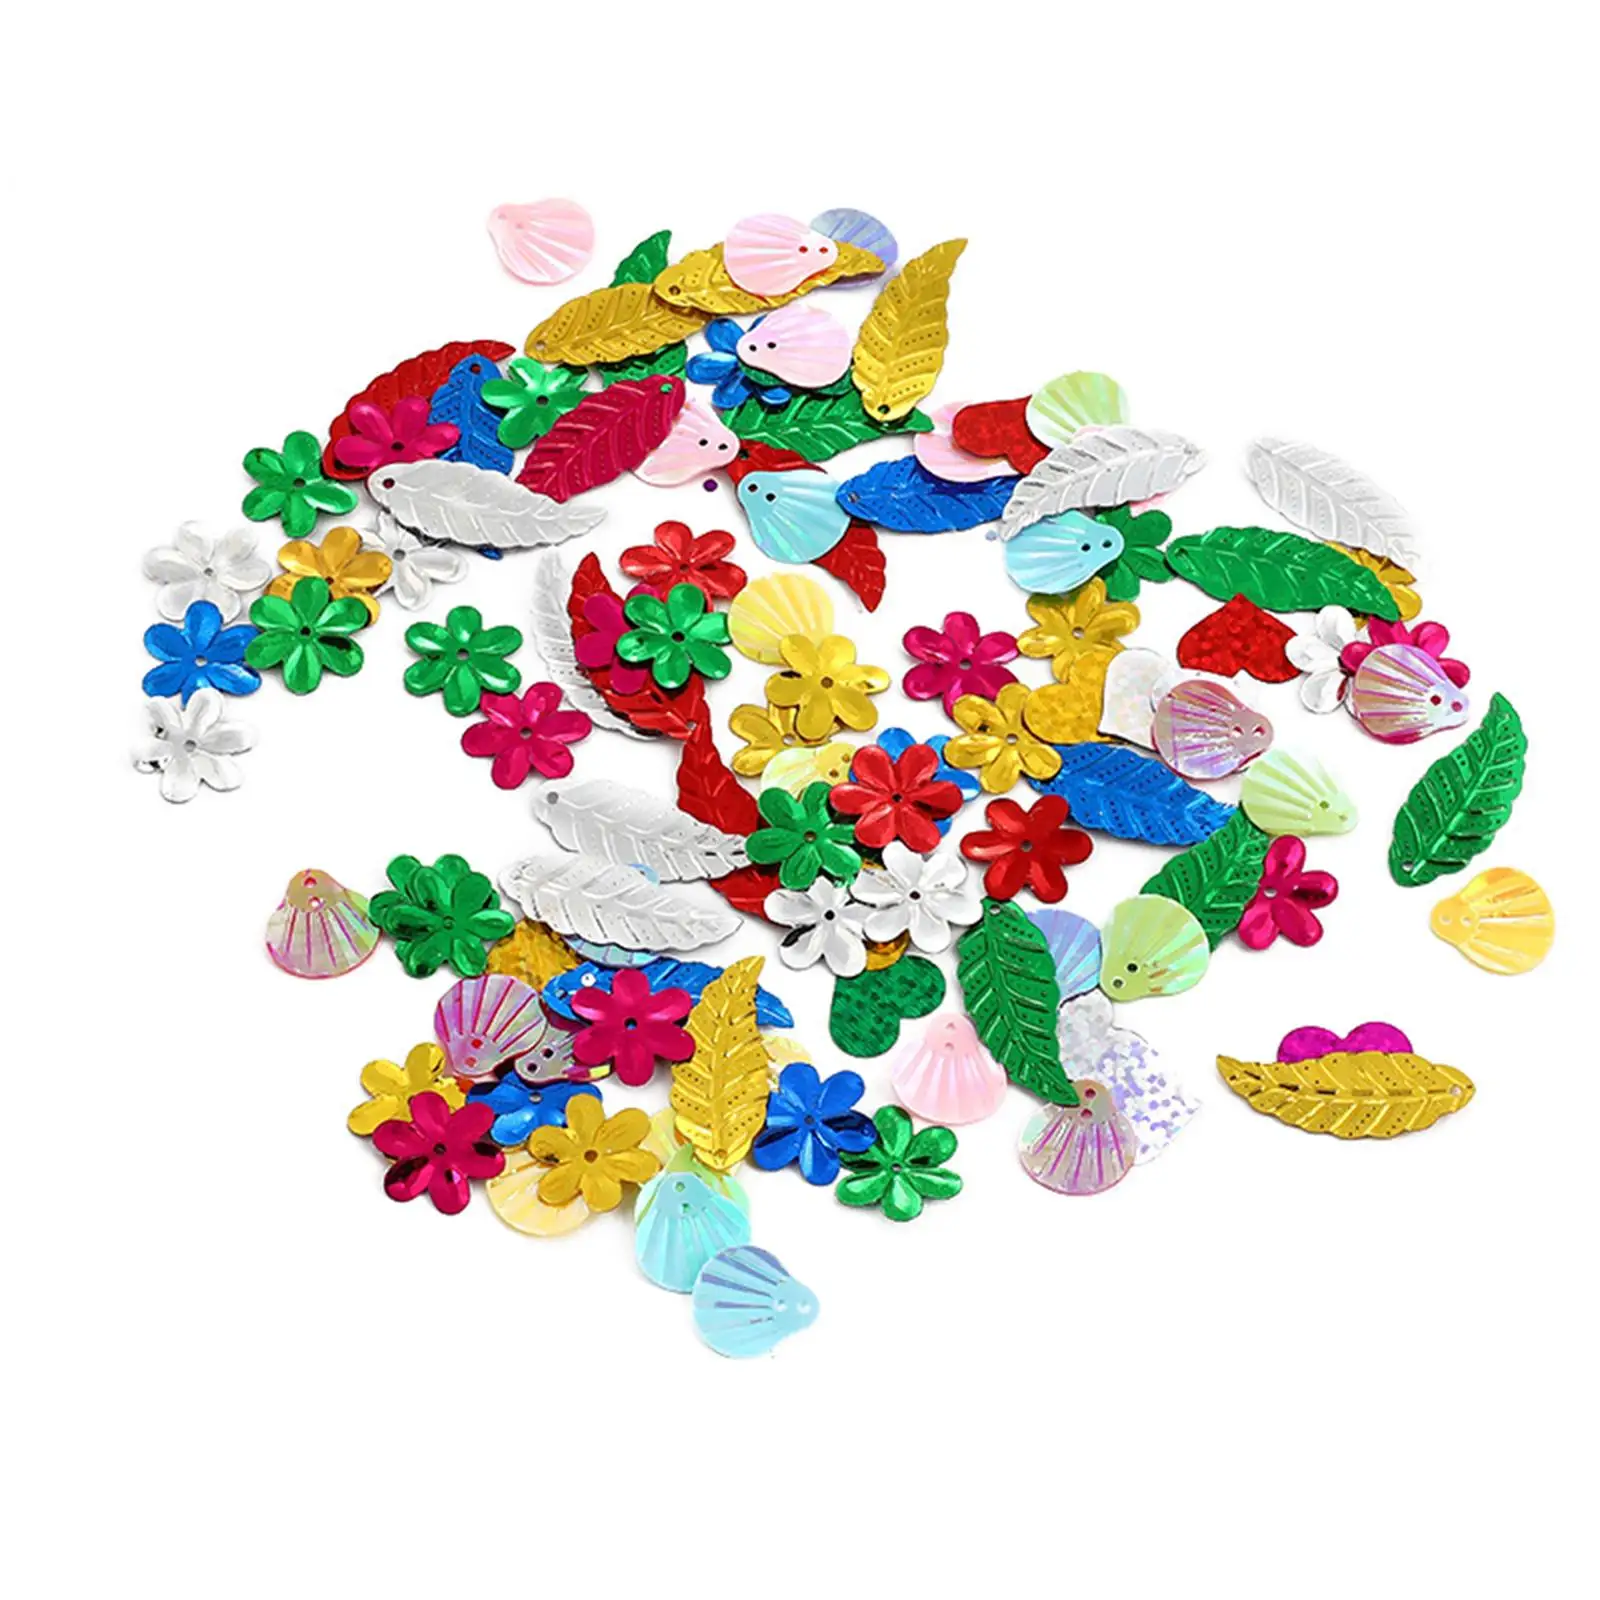 Art Craft Set Kids Selection Materials Foam Flower Sequin Glue